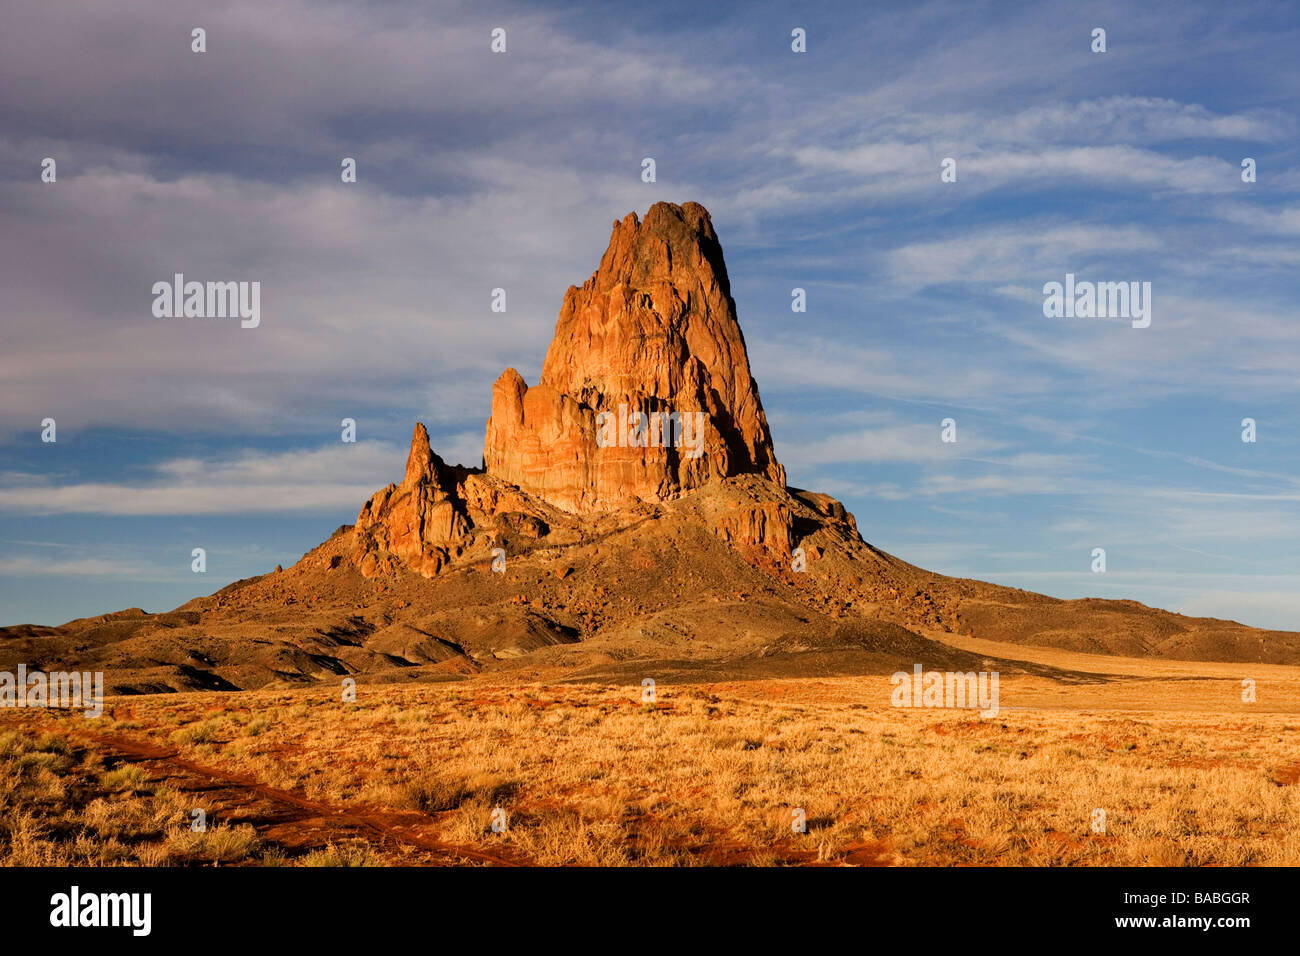 Camino vulcanico immagini e fotografie stock ad alta risoluzione - Alamy